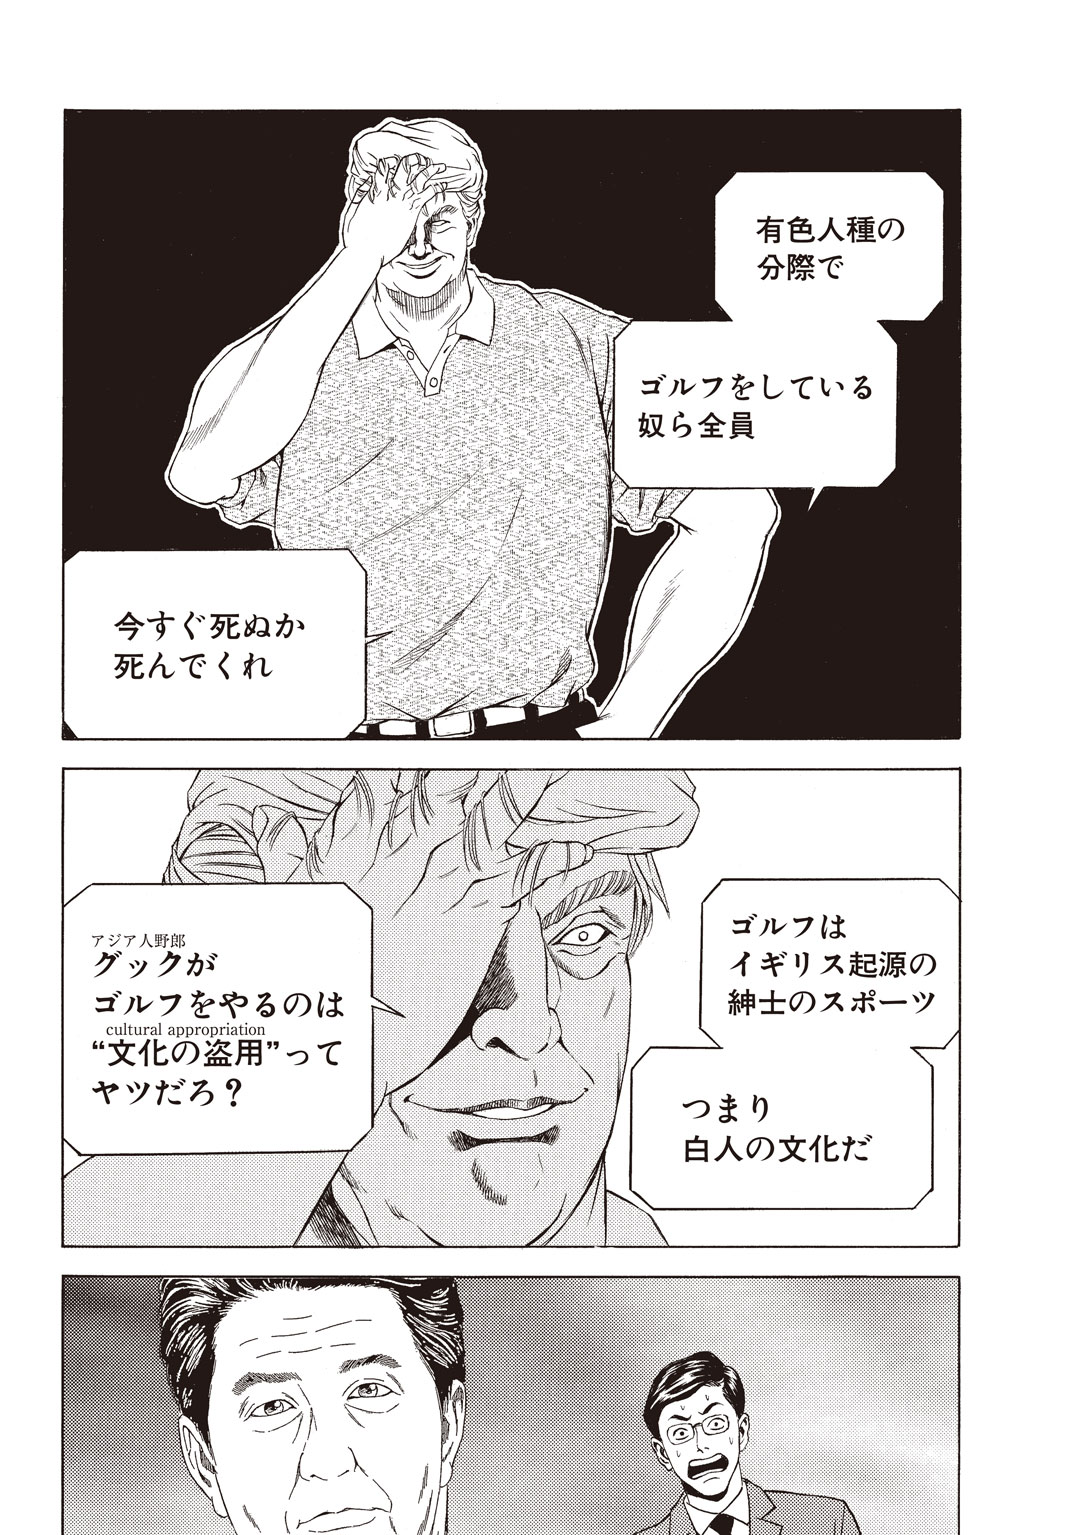 【悲報】バスケ漫画の外人「日本人はバスケごっこやってる猿。猿が相撲しようとか言ったら笑うだろ？」\n_1